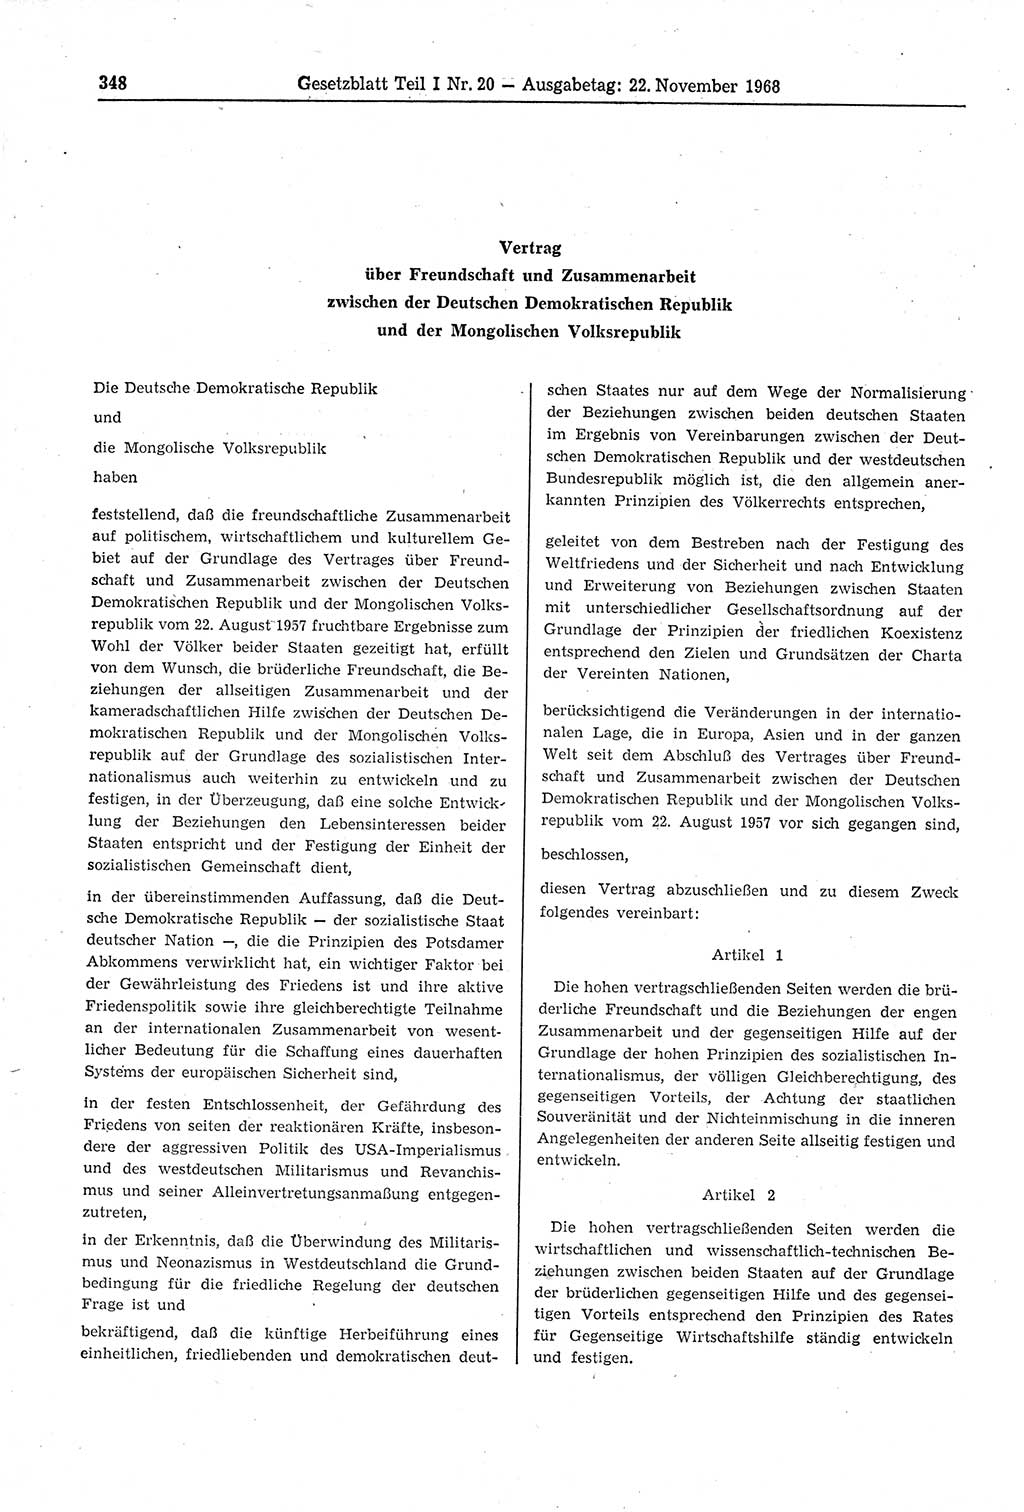 Gesetzblatt (GBl.) der Deutschen Demokratischen Republik (DDR) Teil Ⅰ 1968, Seite 348 (GBl. DDR Ⅰ 1968, S. 348)